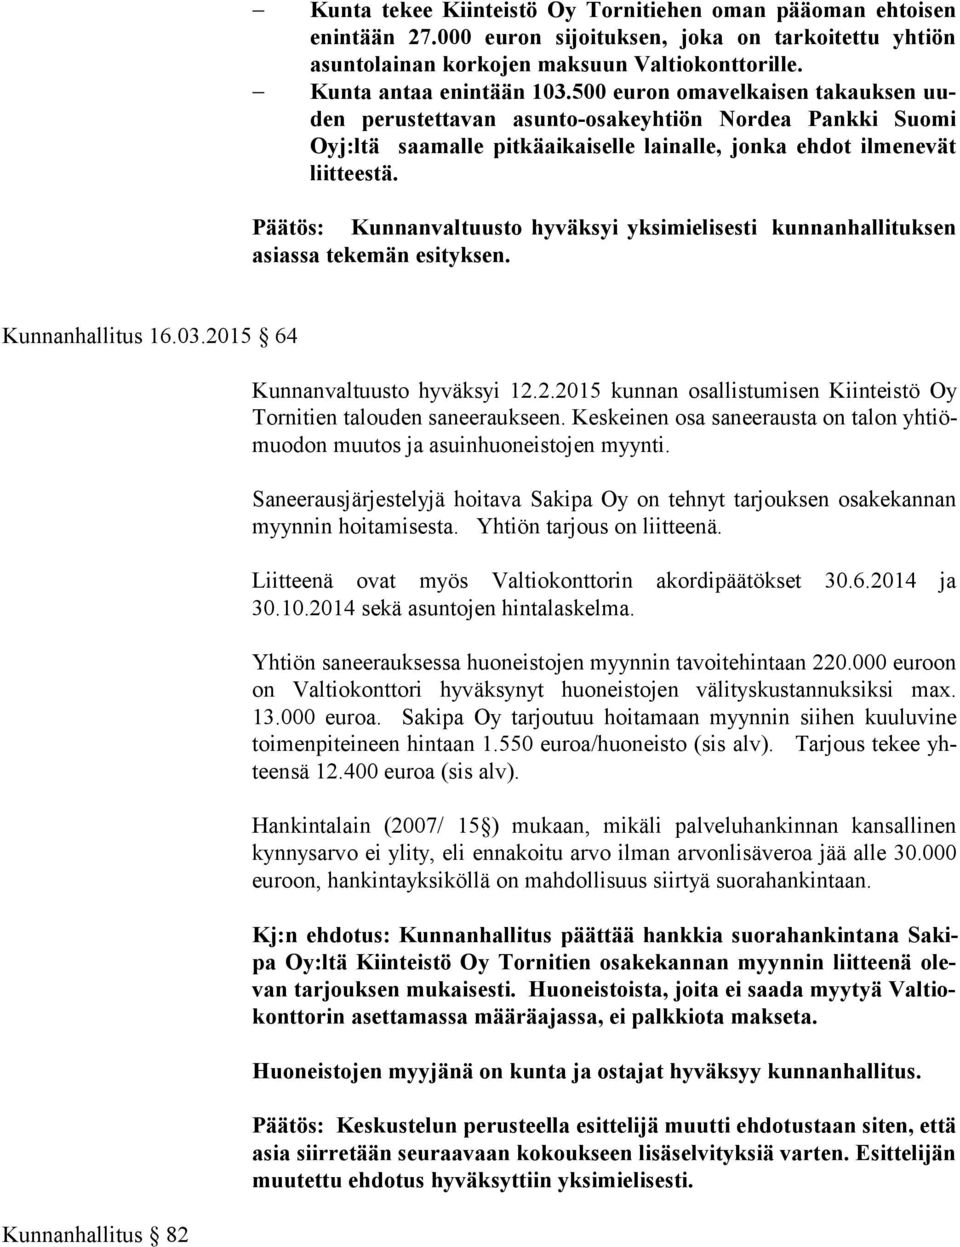 500 euron omavelkaisen takauksen uuden pe rus tet ta van asunto-osakeyhtiön Nordea Pankki Suomi Oyj:l tä saa mal le pitkäaikaiselle lainalle, jonka ehdot ilmenevät liit tees tä.